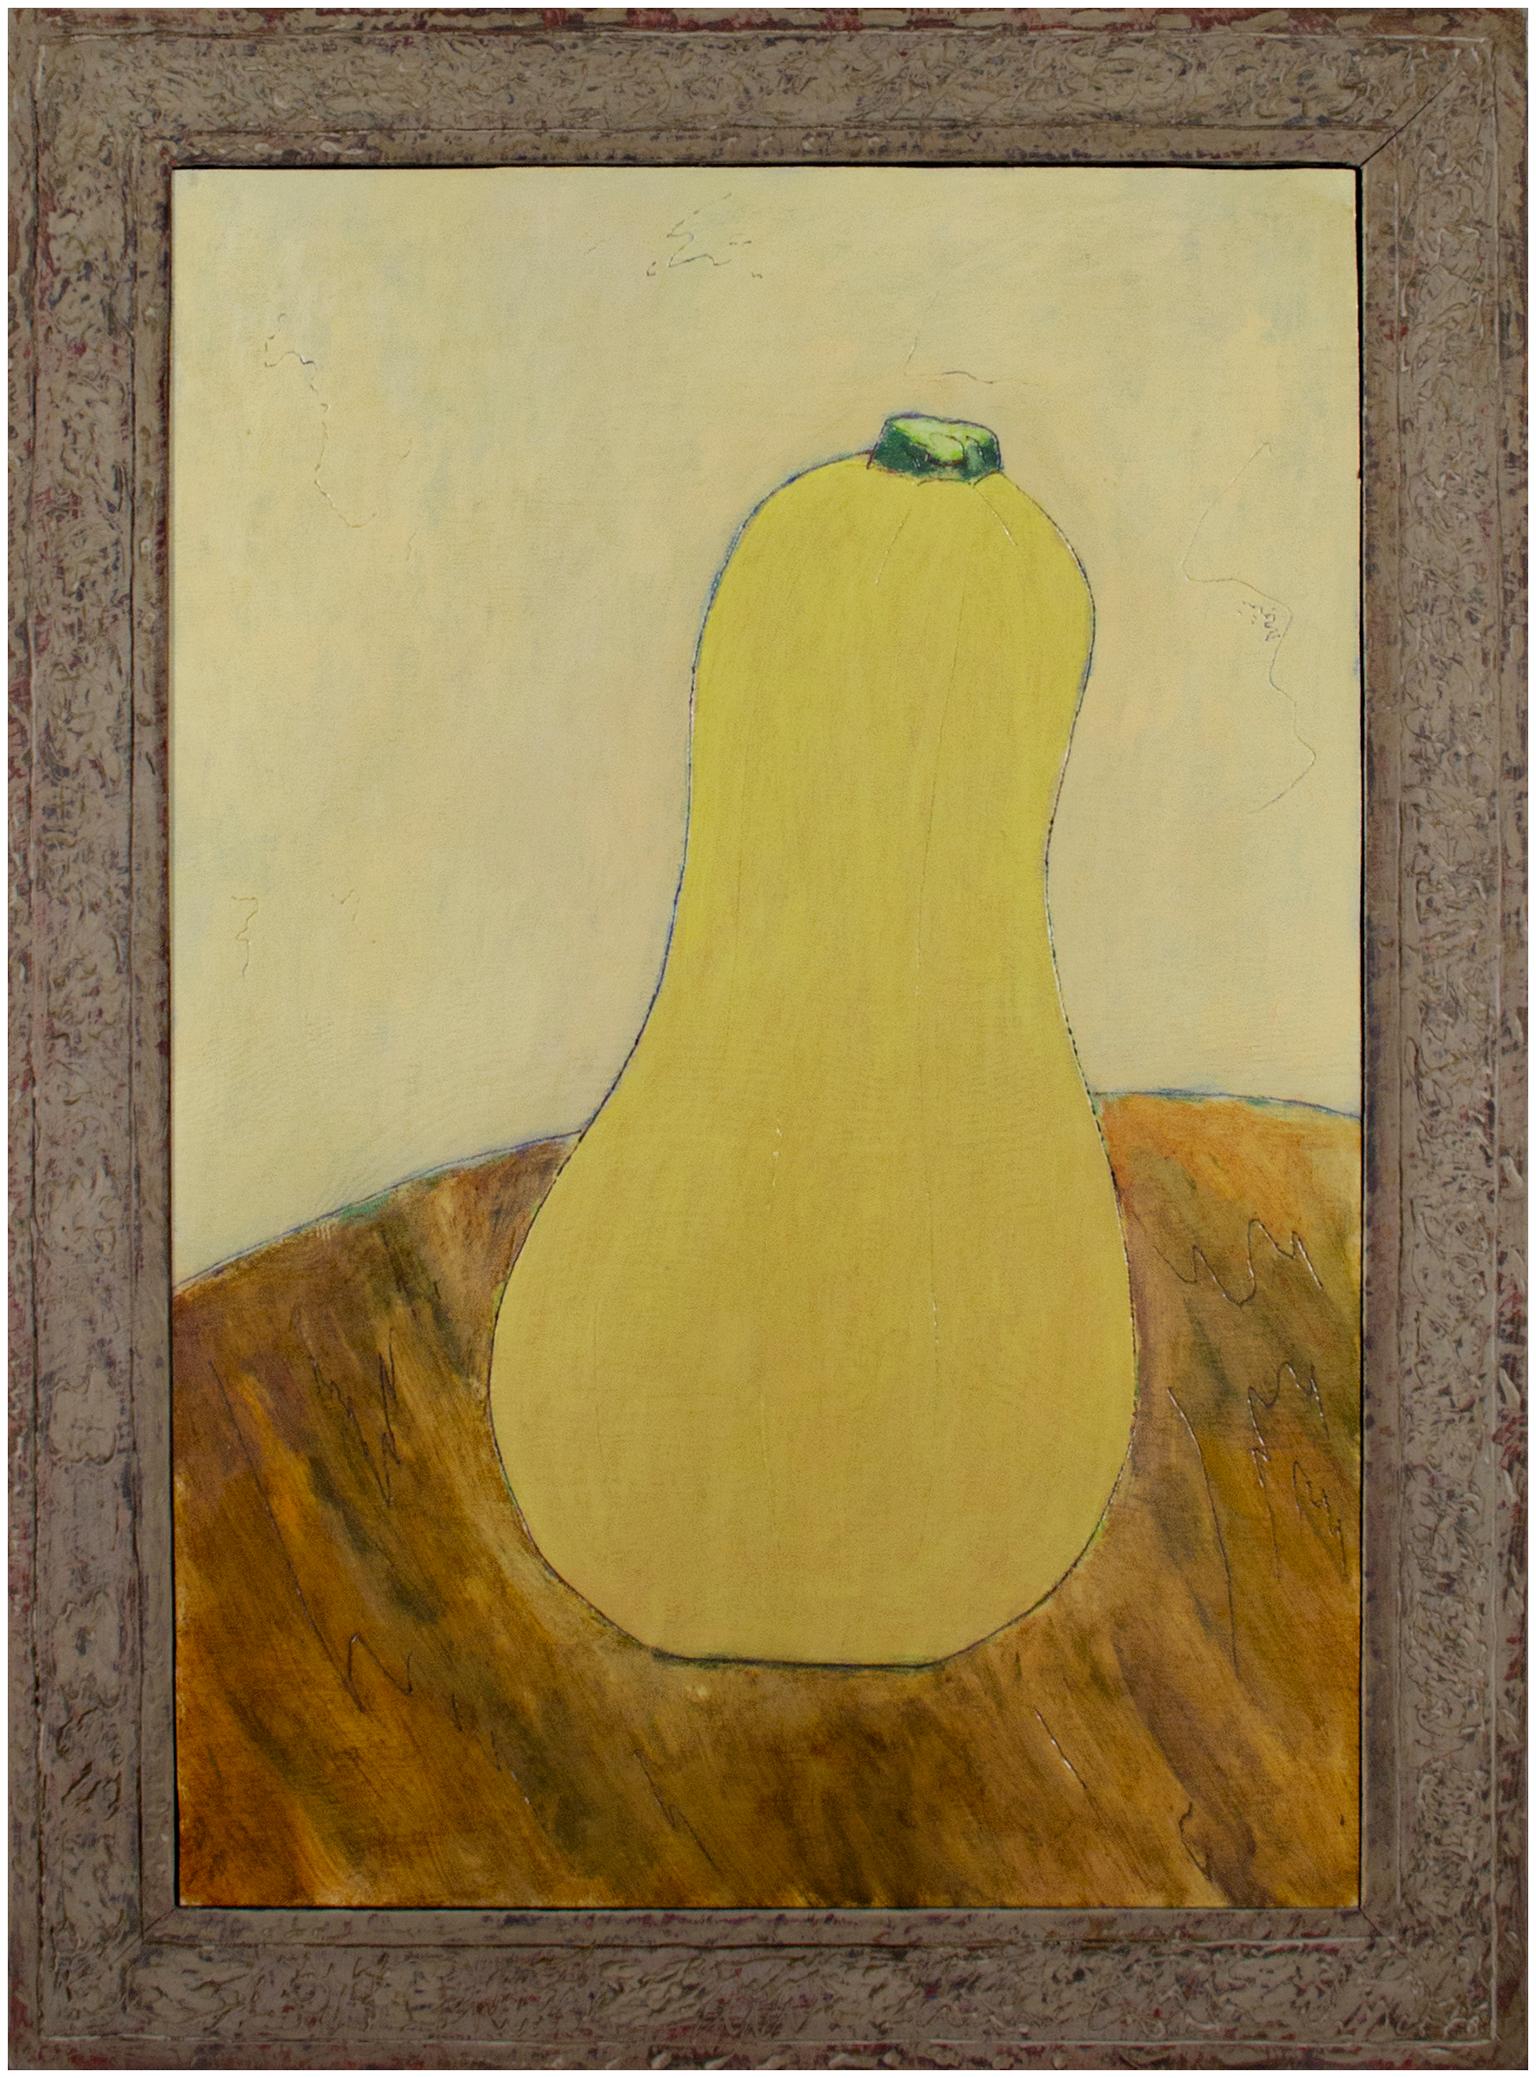 "Butter Squash" de l'artiste du Wisconsin Robert Richter est une peinture à l'huile sur bois, datée et estampillée des initiales de l'artiste au verso. Le cadre a été construit et sculpté à la main par l'artiste, ce qui en fait une partie intégrante